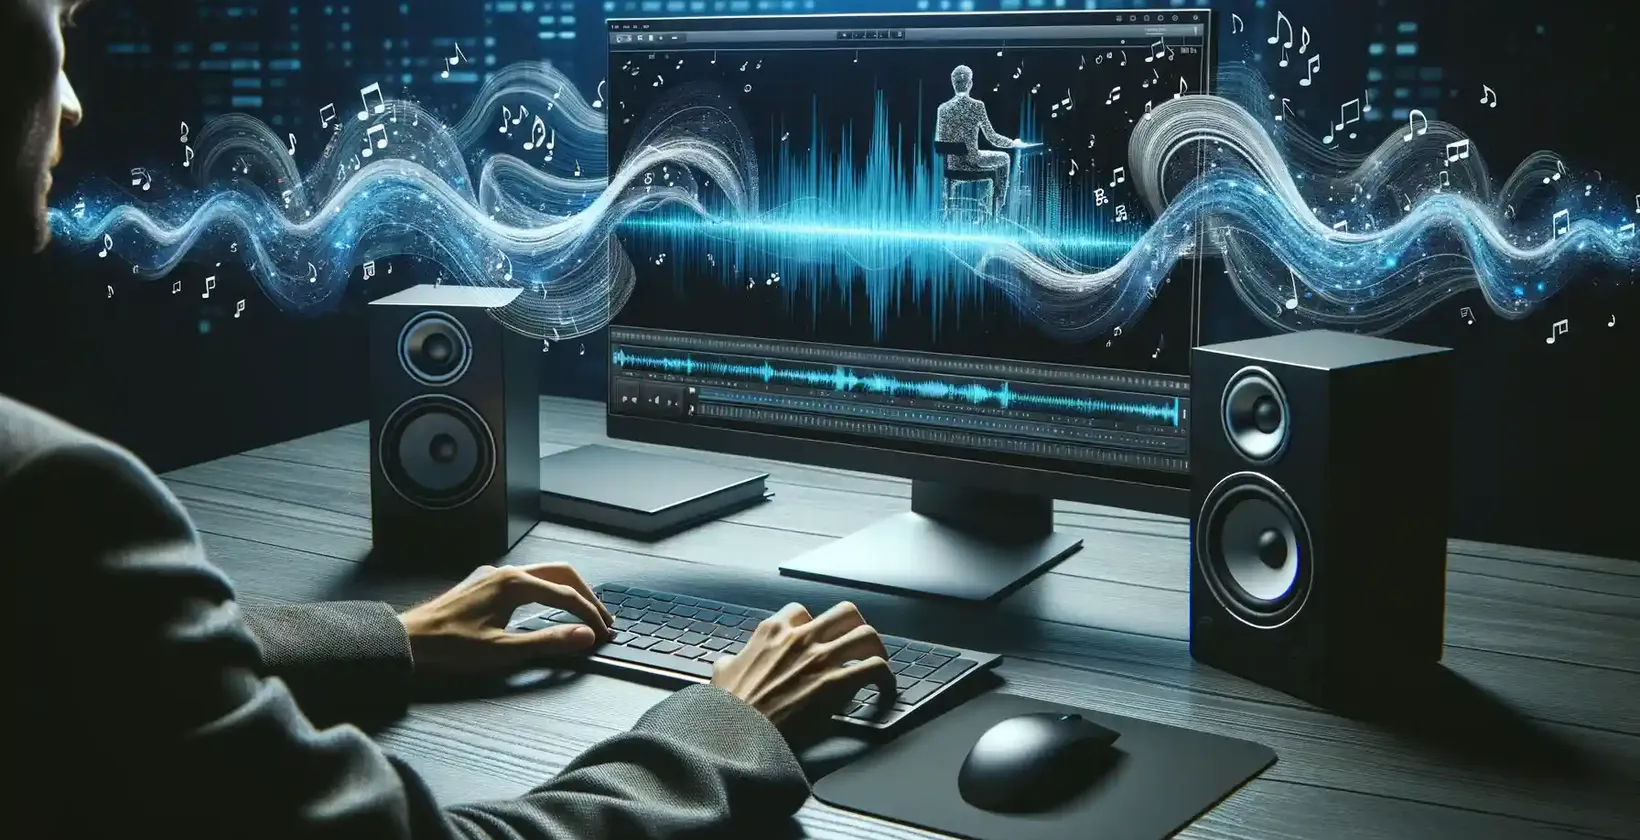 Sodoben delovni prostor, osvetljen z digitalnim vmesnikom, prikazuje moškega, ki se ukvarja z urejanjem zvoka.